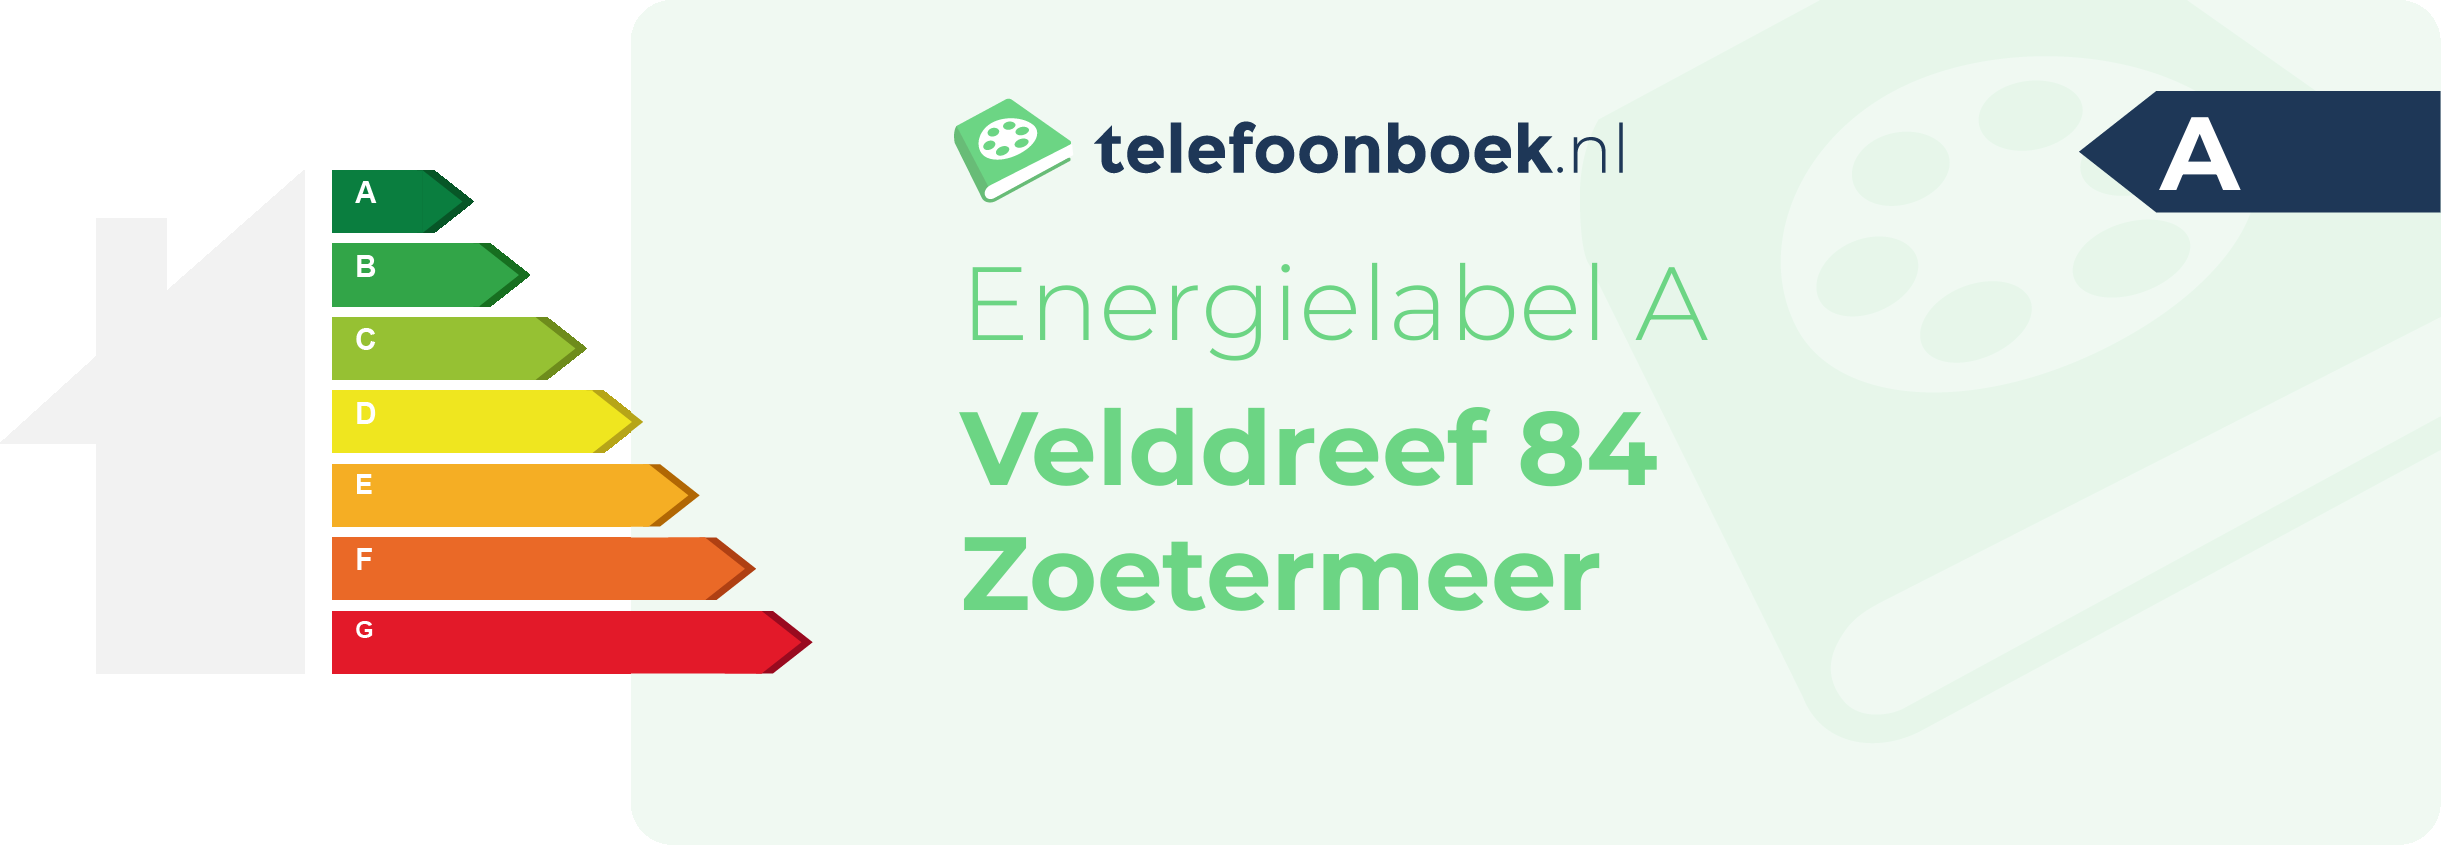 Energielabel Velddreef 84 Zoetermeer